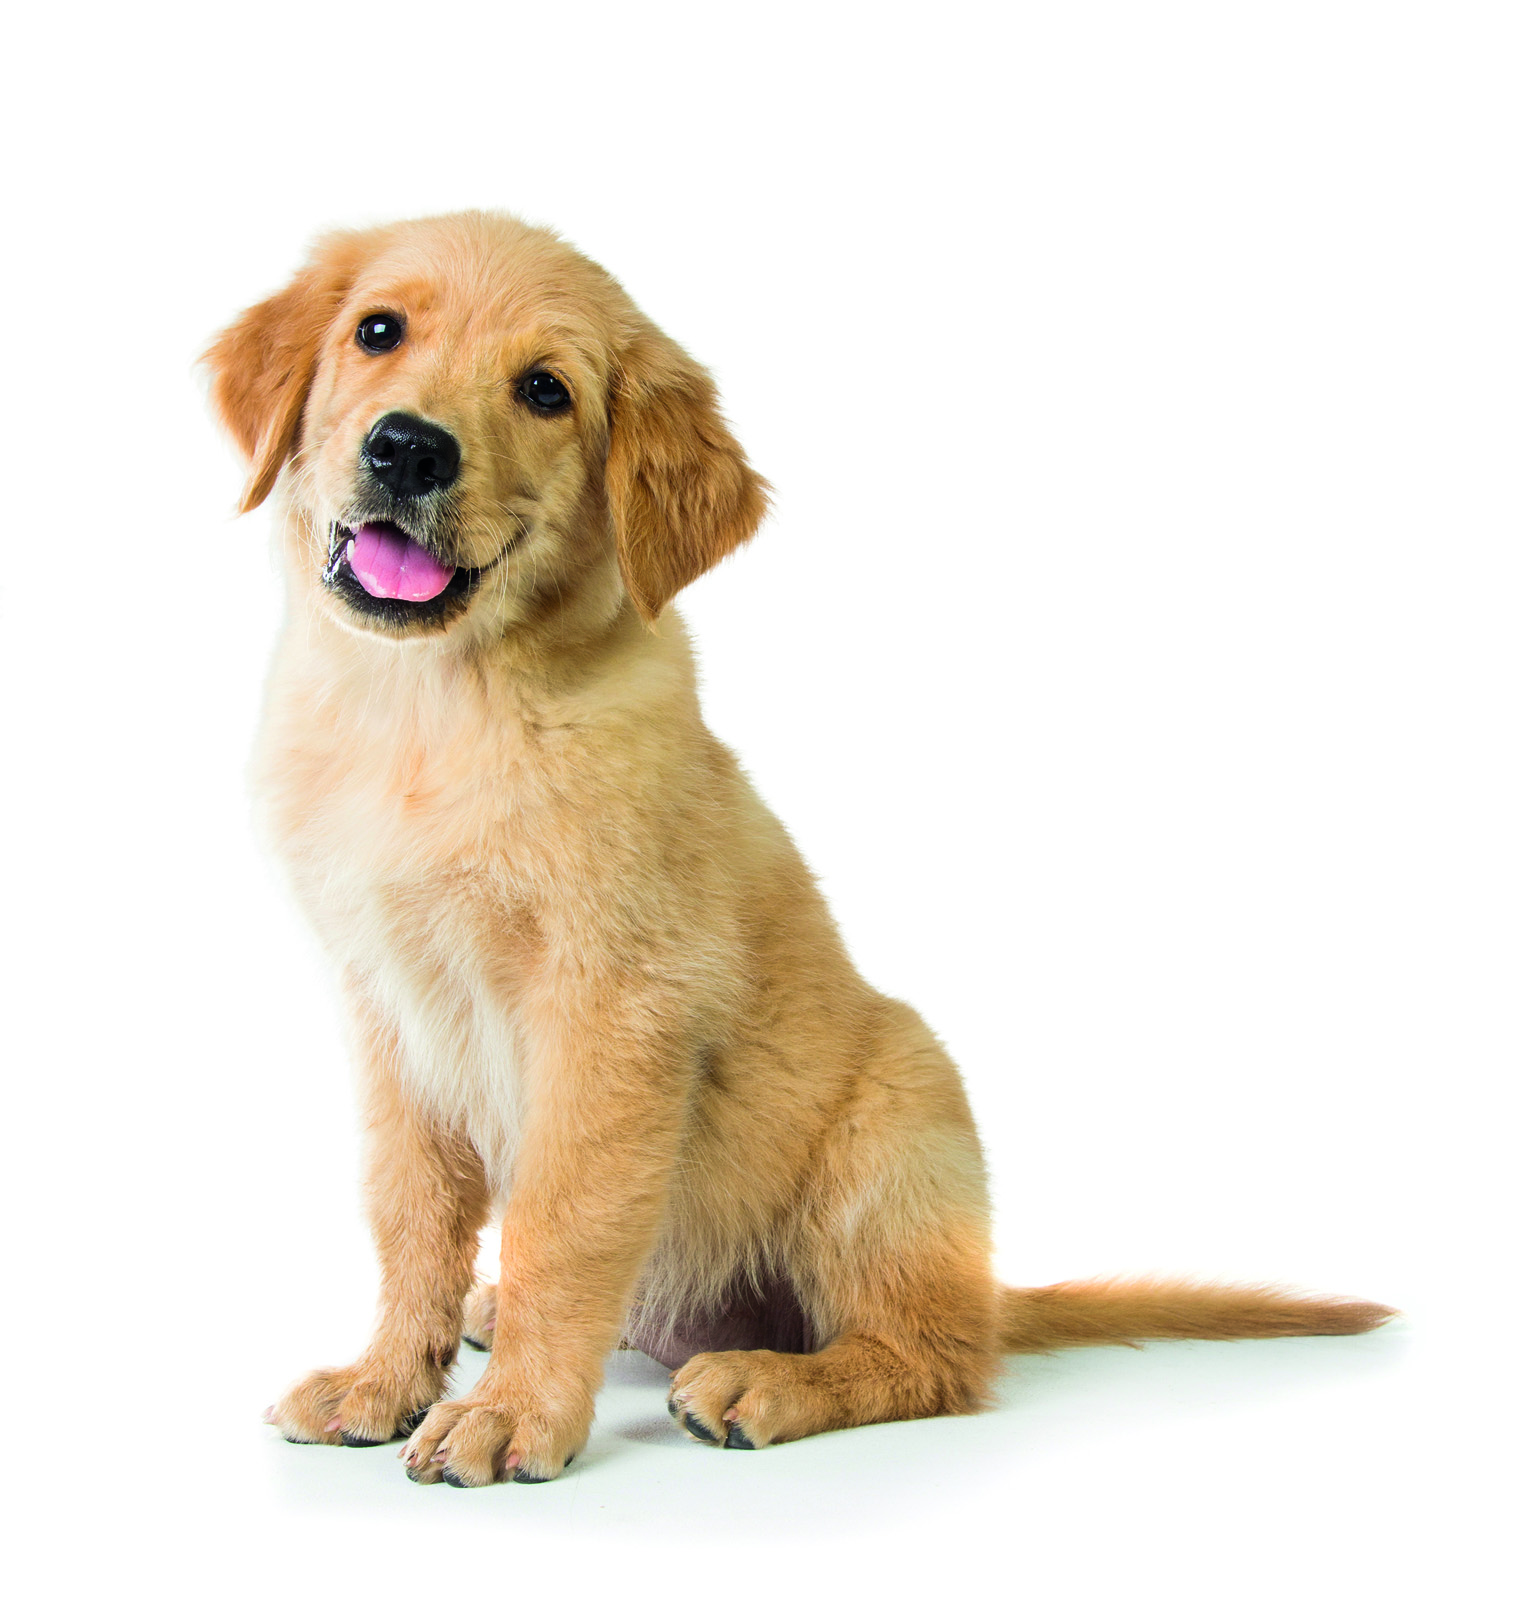 Cute golden retriever puppy